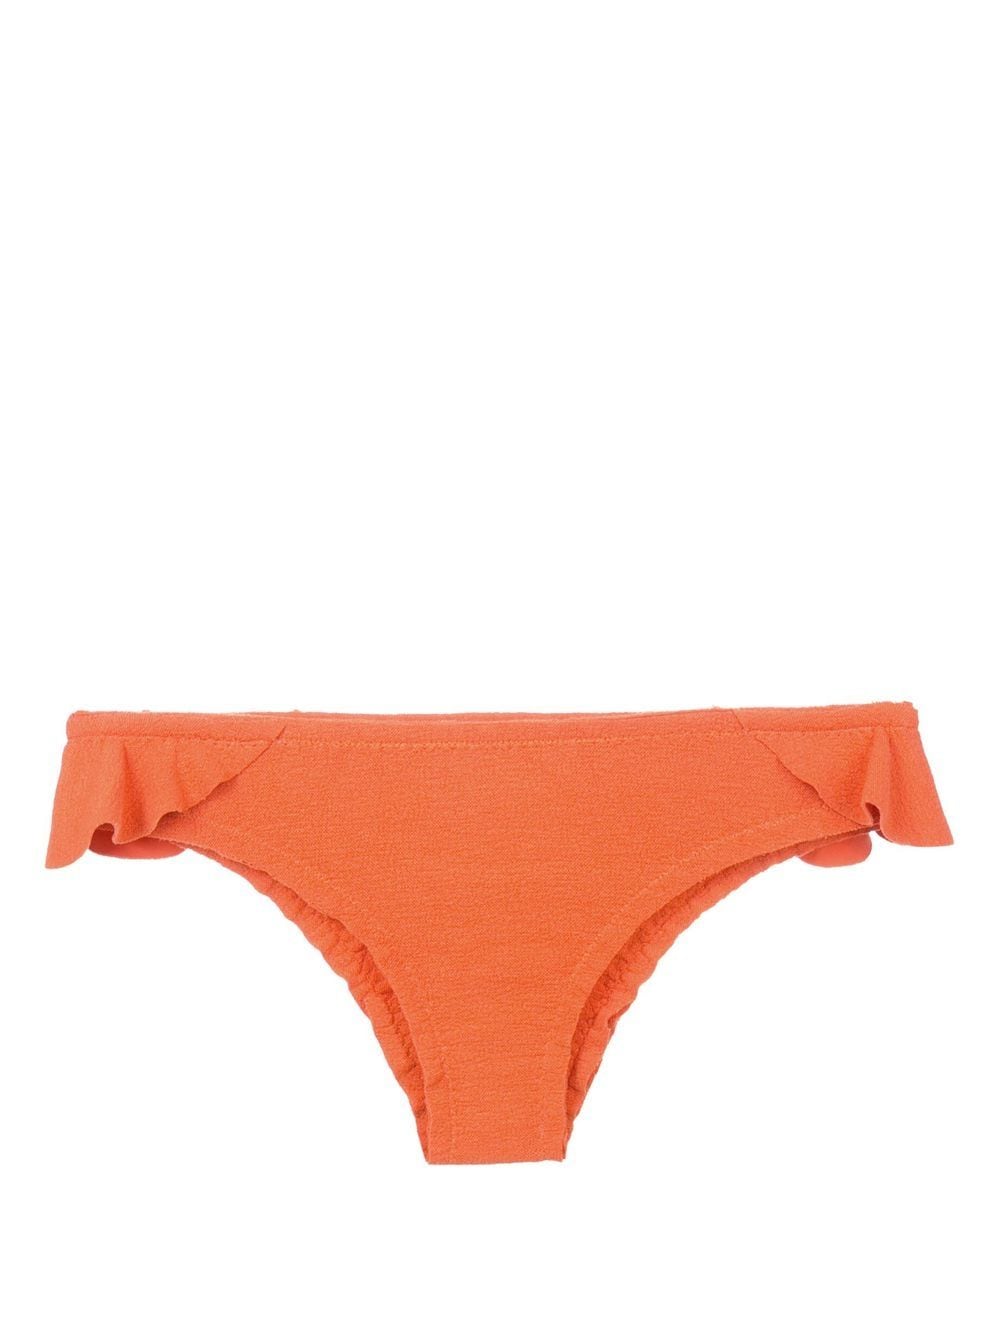 Clube Bossa Laven Bikinihöschen - Orange von Clube Bossa